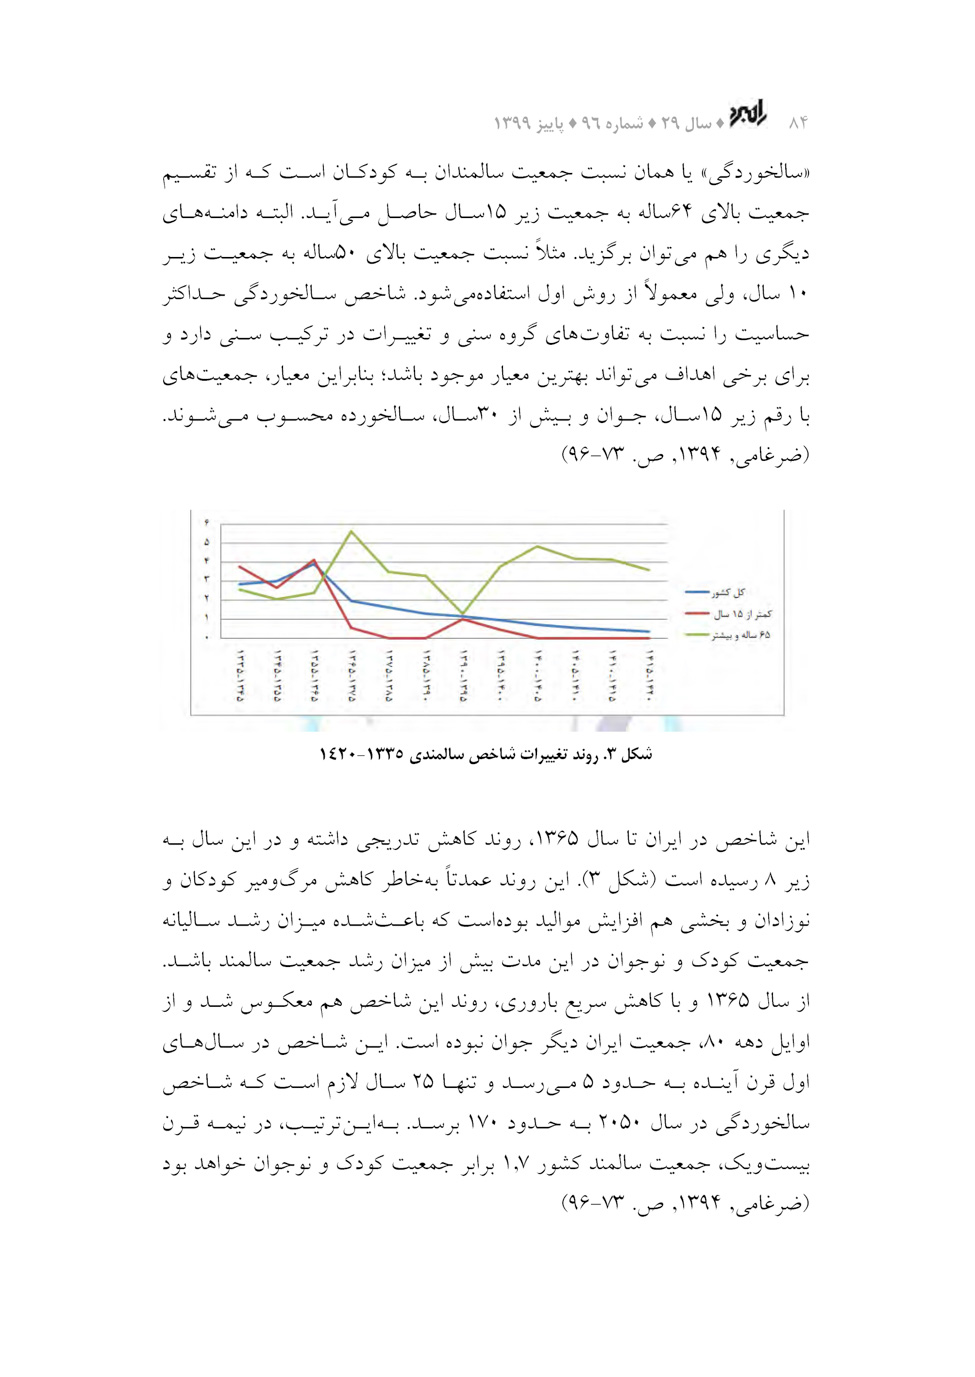 سالمندی جمعیت؛ چالشی برای امنیت ملی جمهوری اسلامی ایران در دو دهه آینده